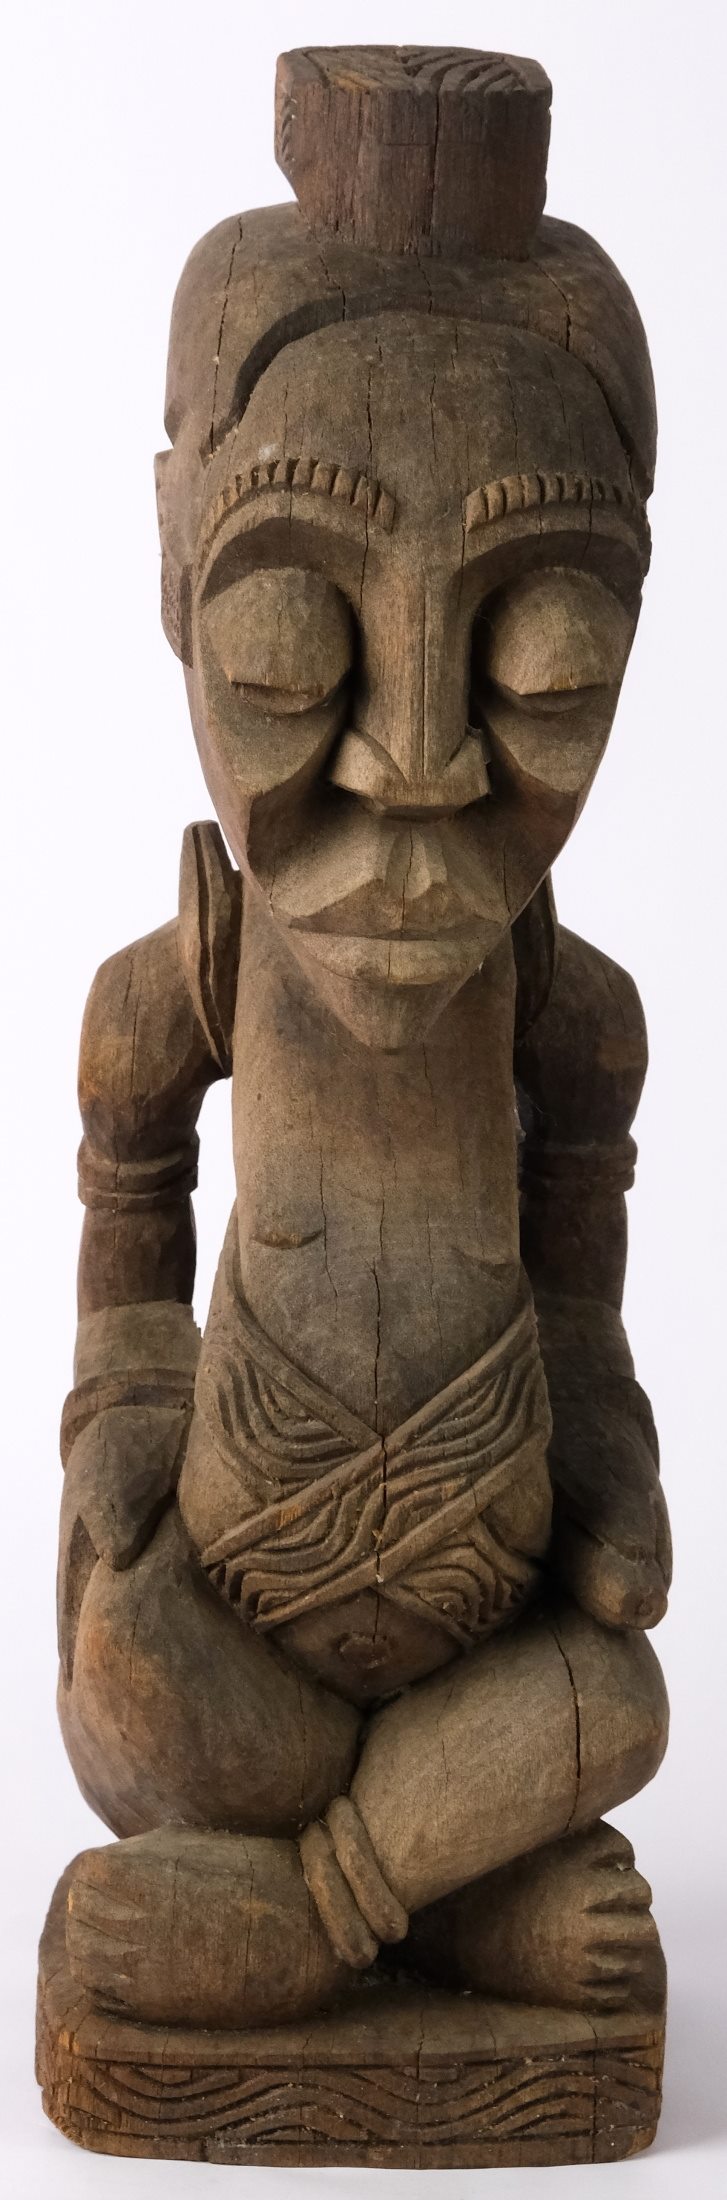 Gabon 20. století - Socha předka (ancestor statue) Ambete